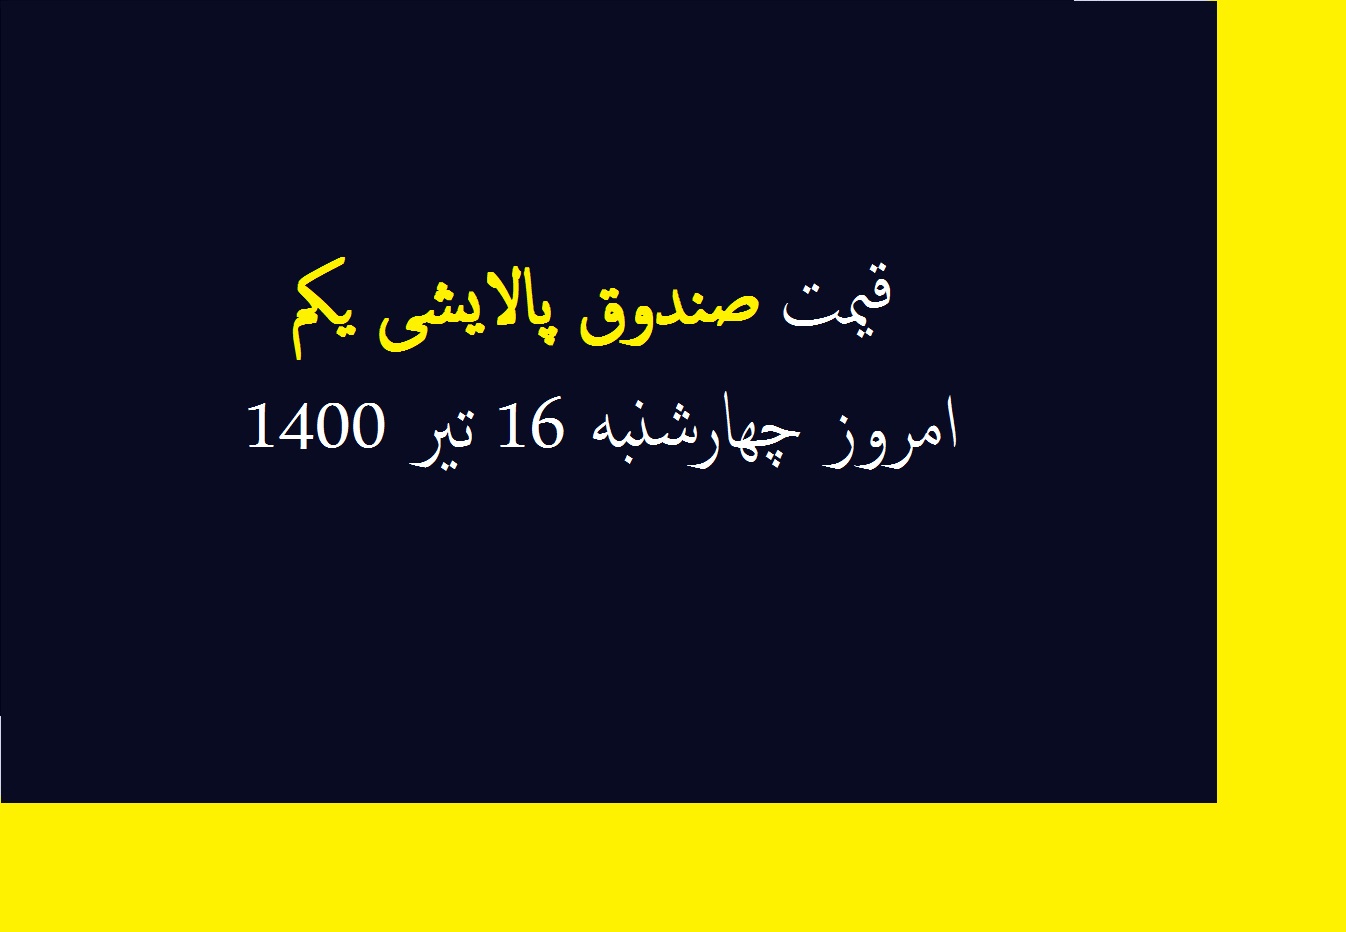 قیمت صندوق پالایشی یکم امروز چهارشنبه 16 تیر 1400